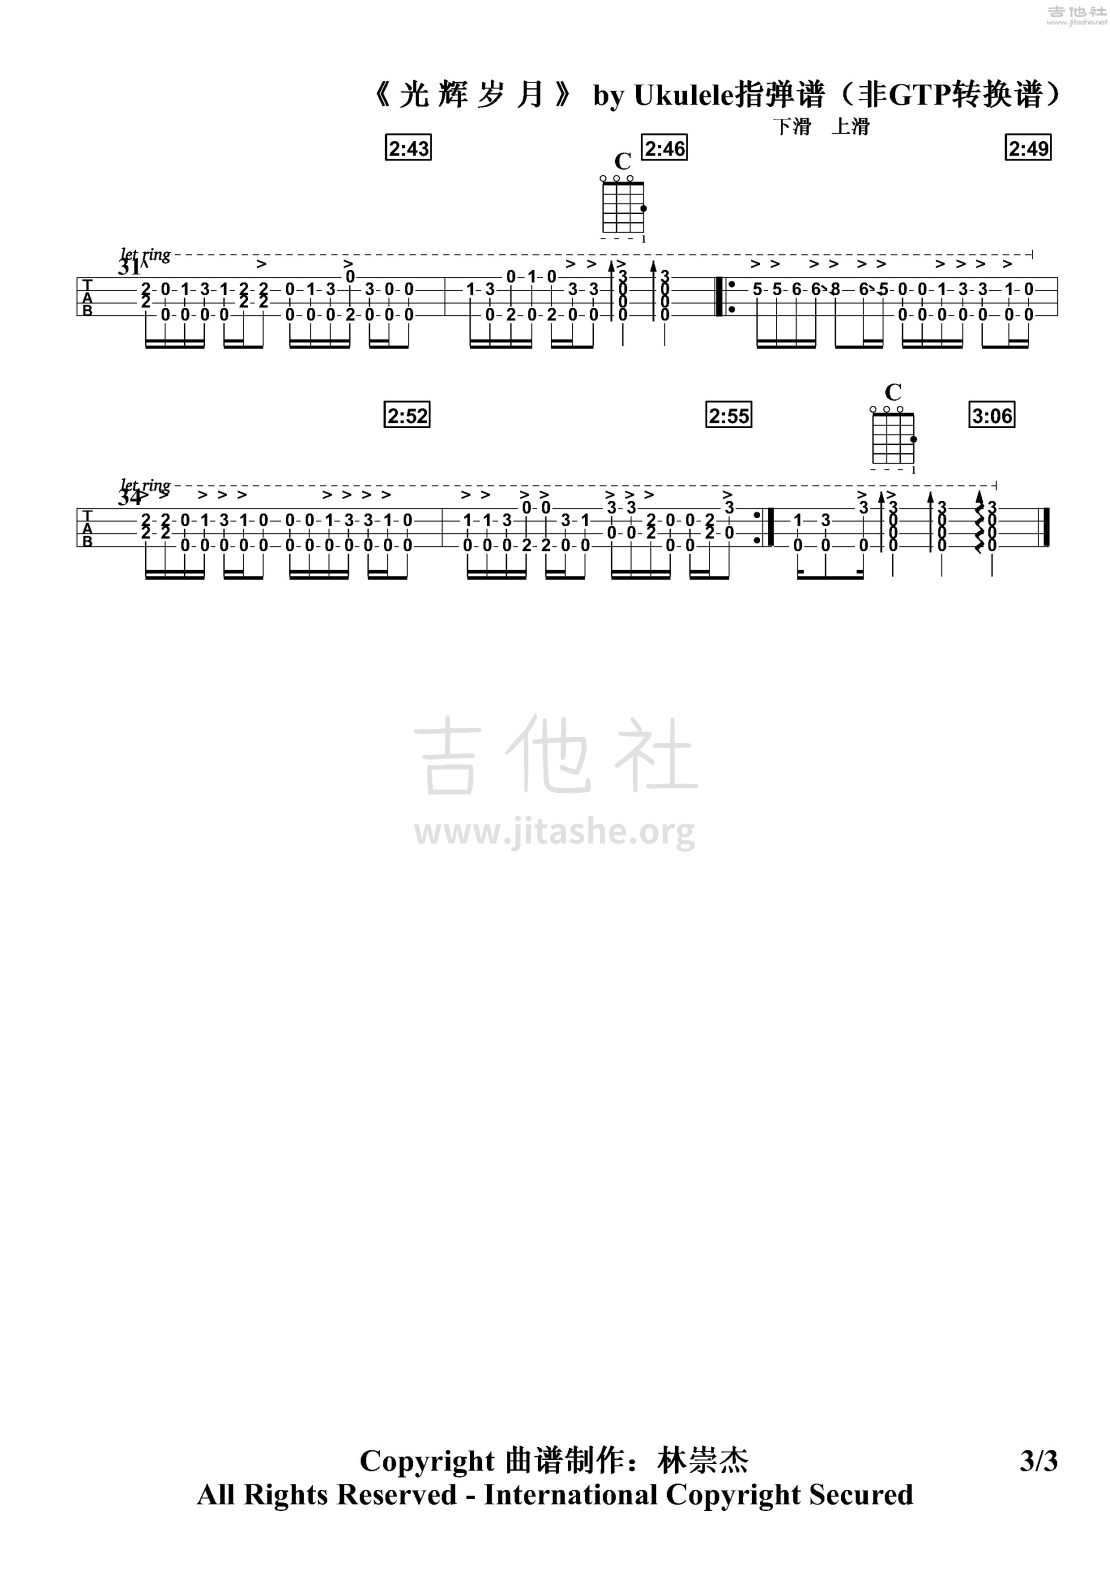 光辉岁月吉他谱(图片谱,光辉岁月,Beyond,尤克里里)_Beyond_光辉岁月ukulele指弹 j2转调1-3.jpg